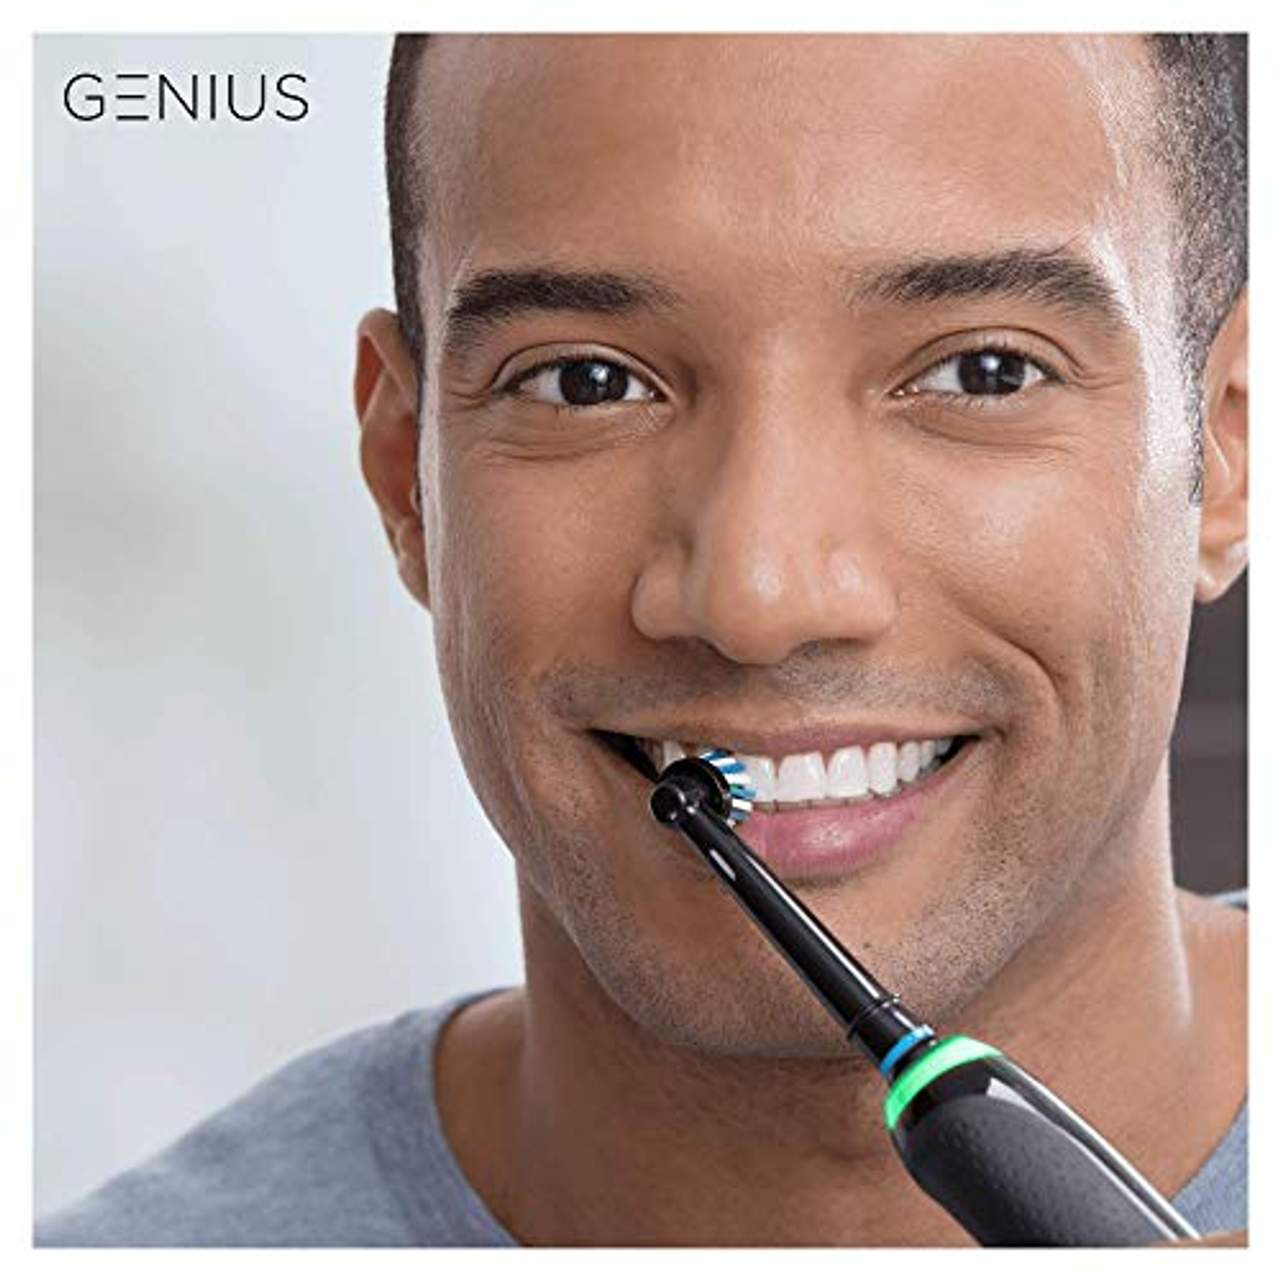 Oral-B Genius 9900 